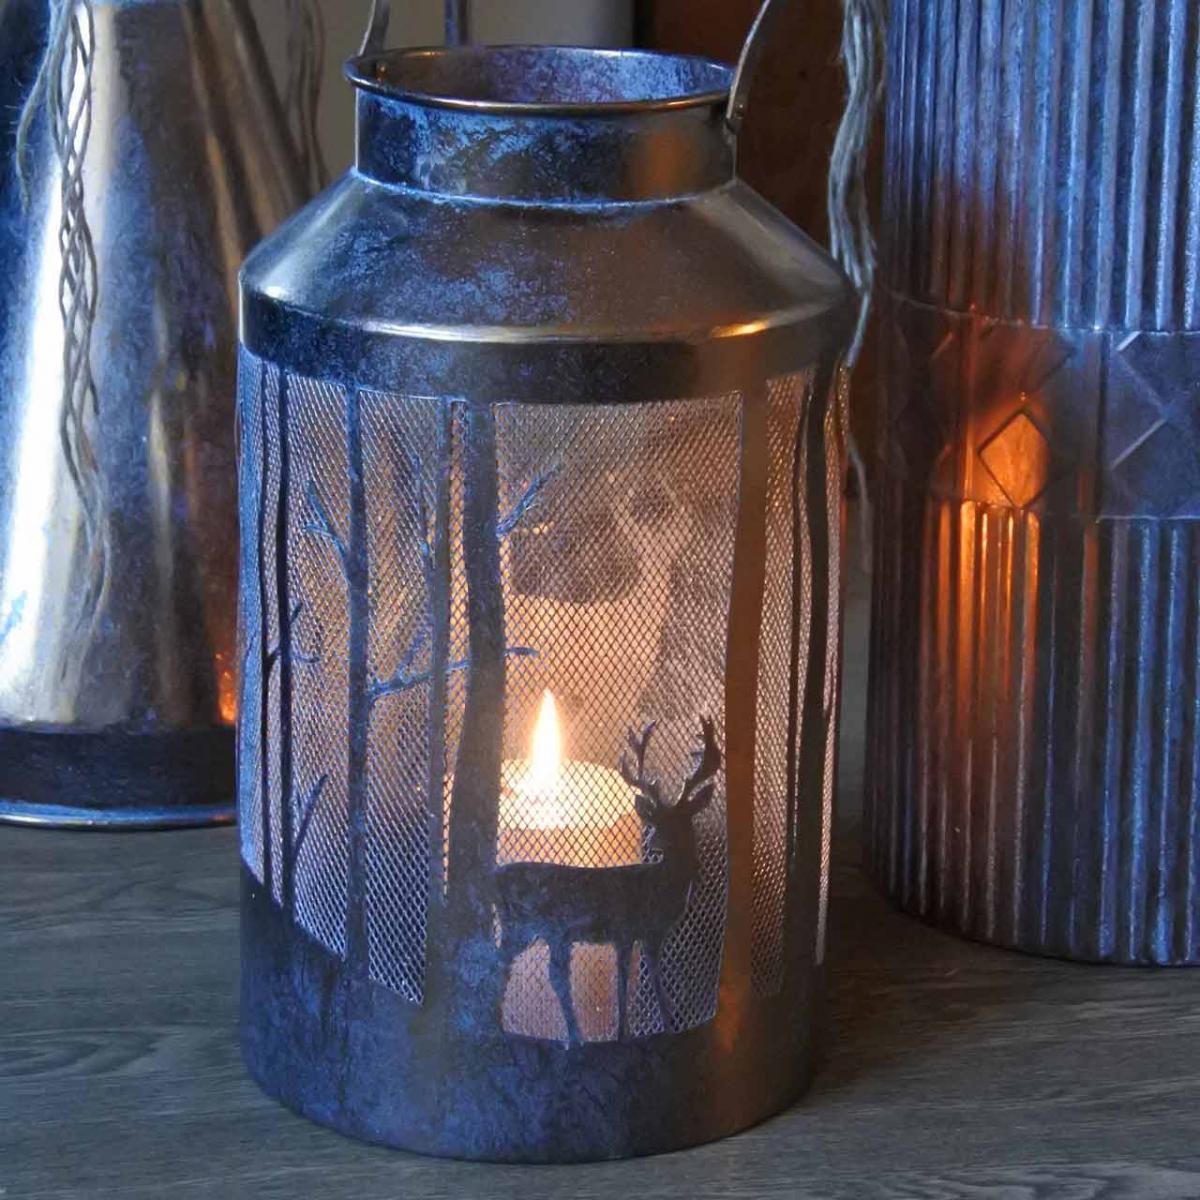 Vintage lantern candle holder deer in the forest Ø19cm H33cm